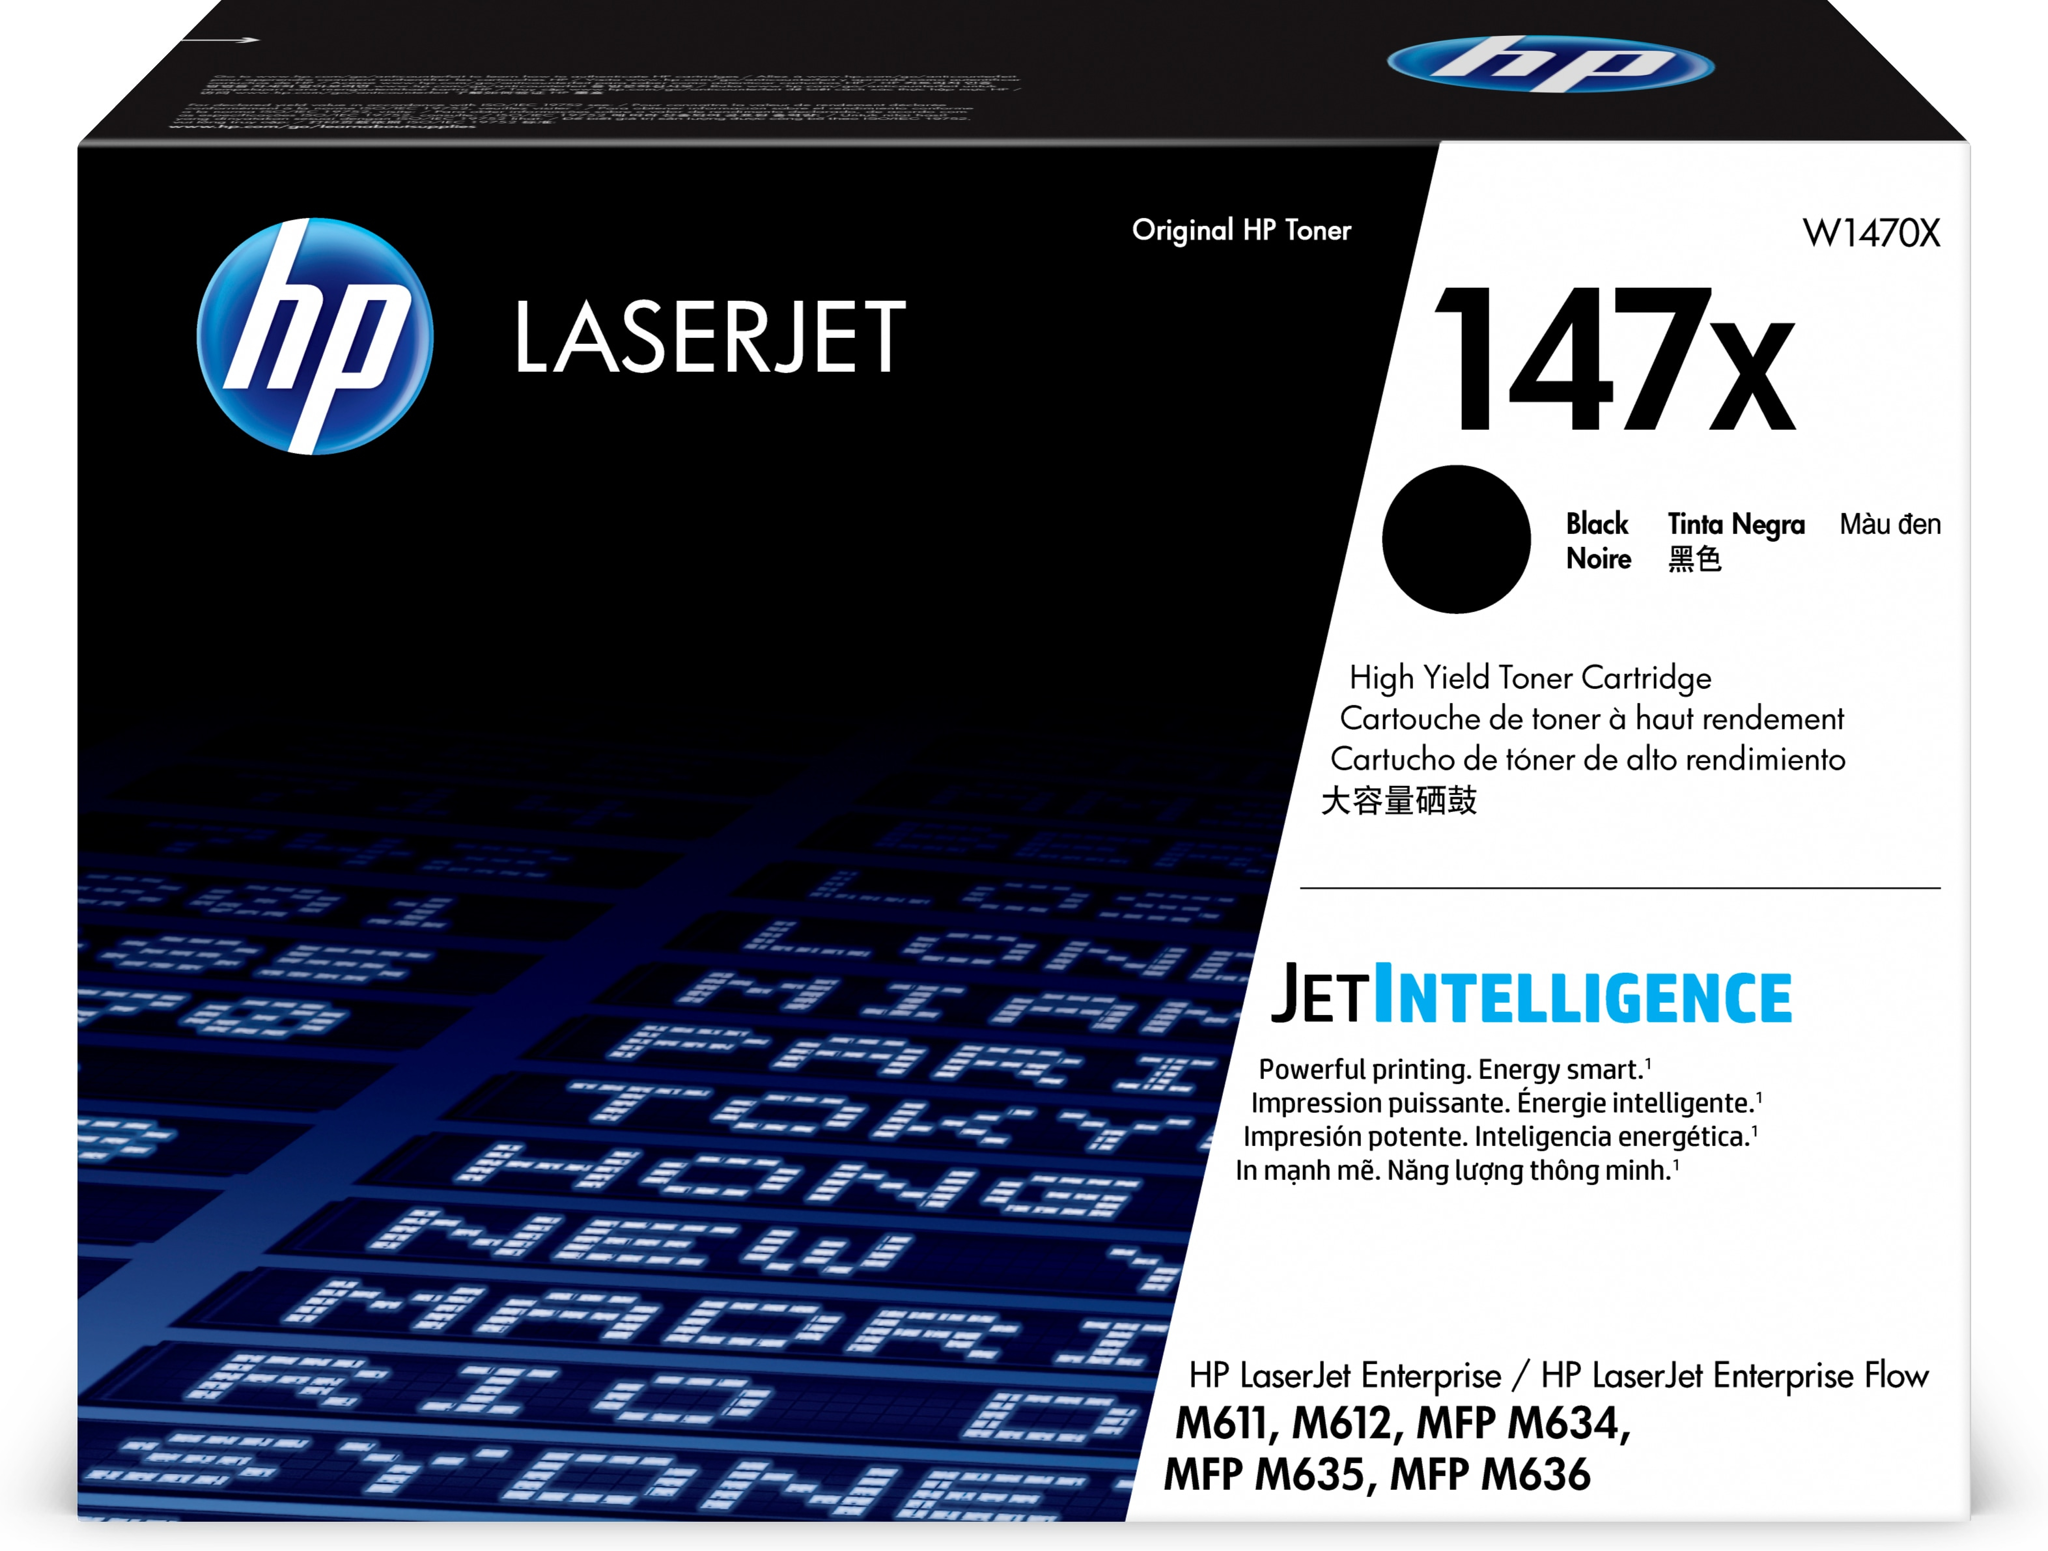 Bild von HP LaserJet 147X Schwarz Original Tonerkartusche mit hoher Reichweite - 25200 Seiten - Schwarz - 1 Stück(e)